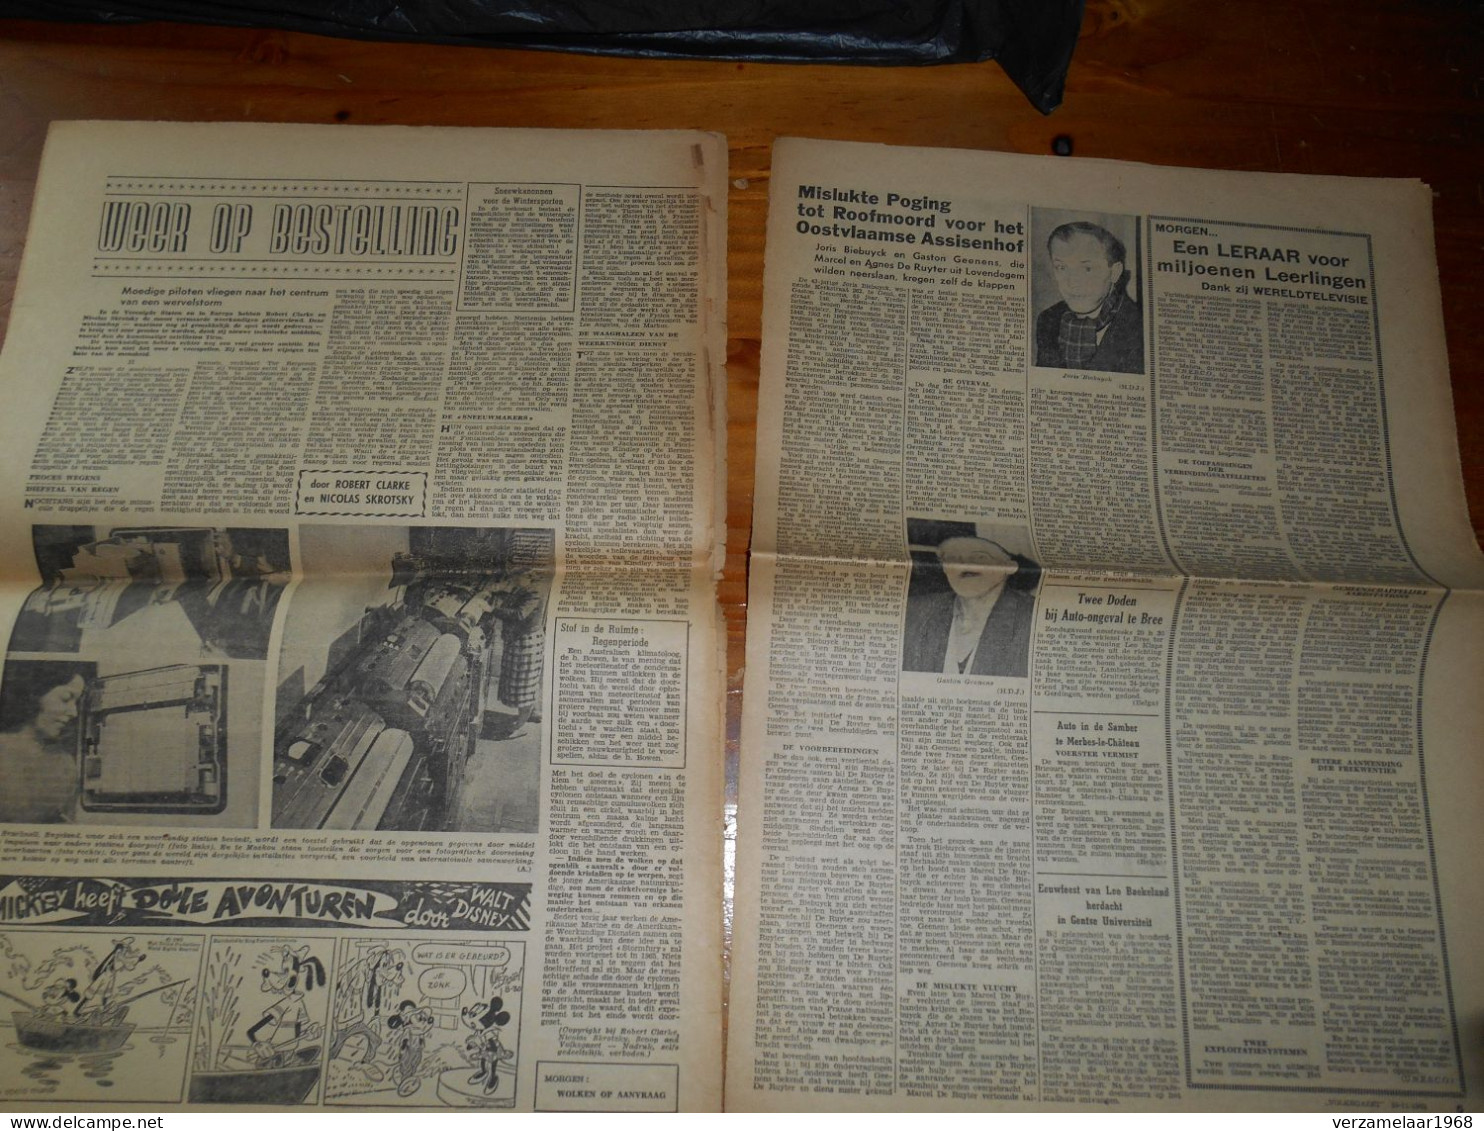 De Moord op : PRESIDENT KENNEDY , origenele krantknipsels uit : 1963 -- ( ismo 21 )